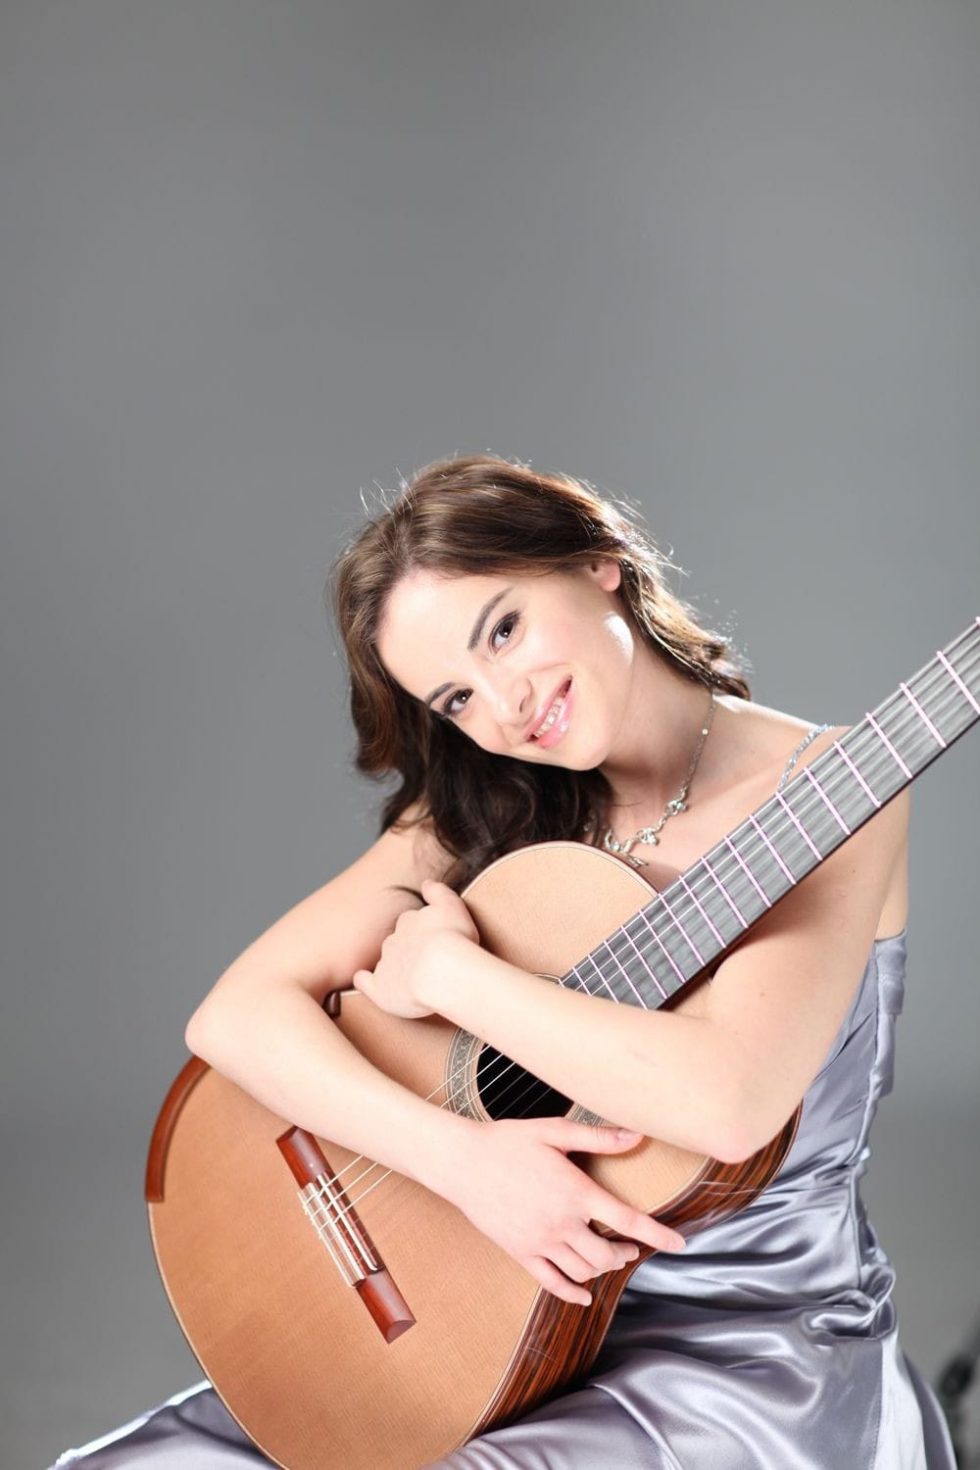 Ana Vidović, la guitarra clásica de Croacia Unexpected Visit Web